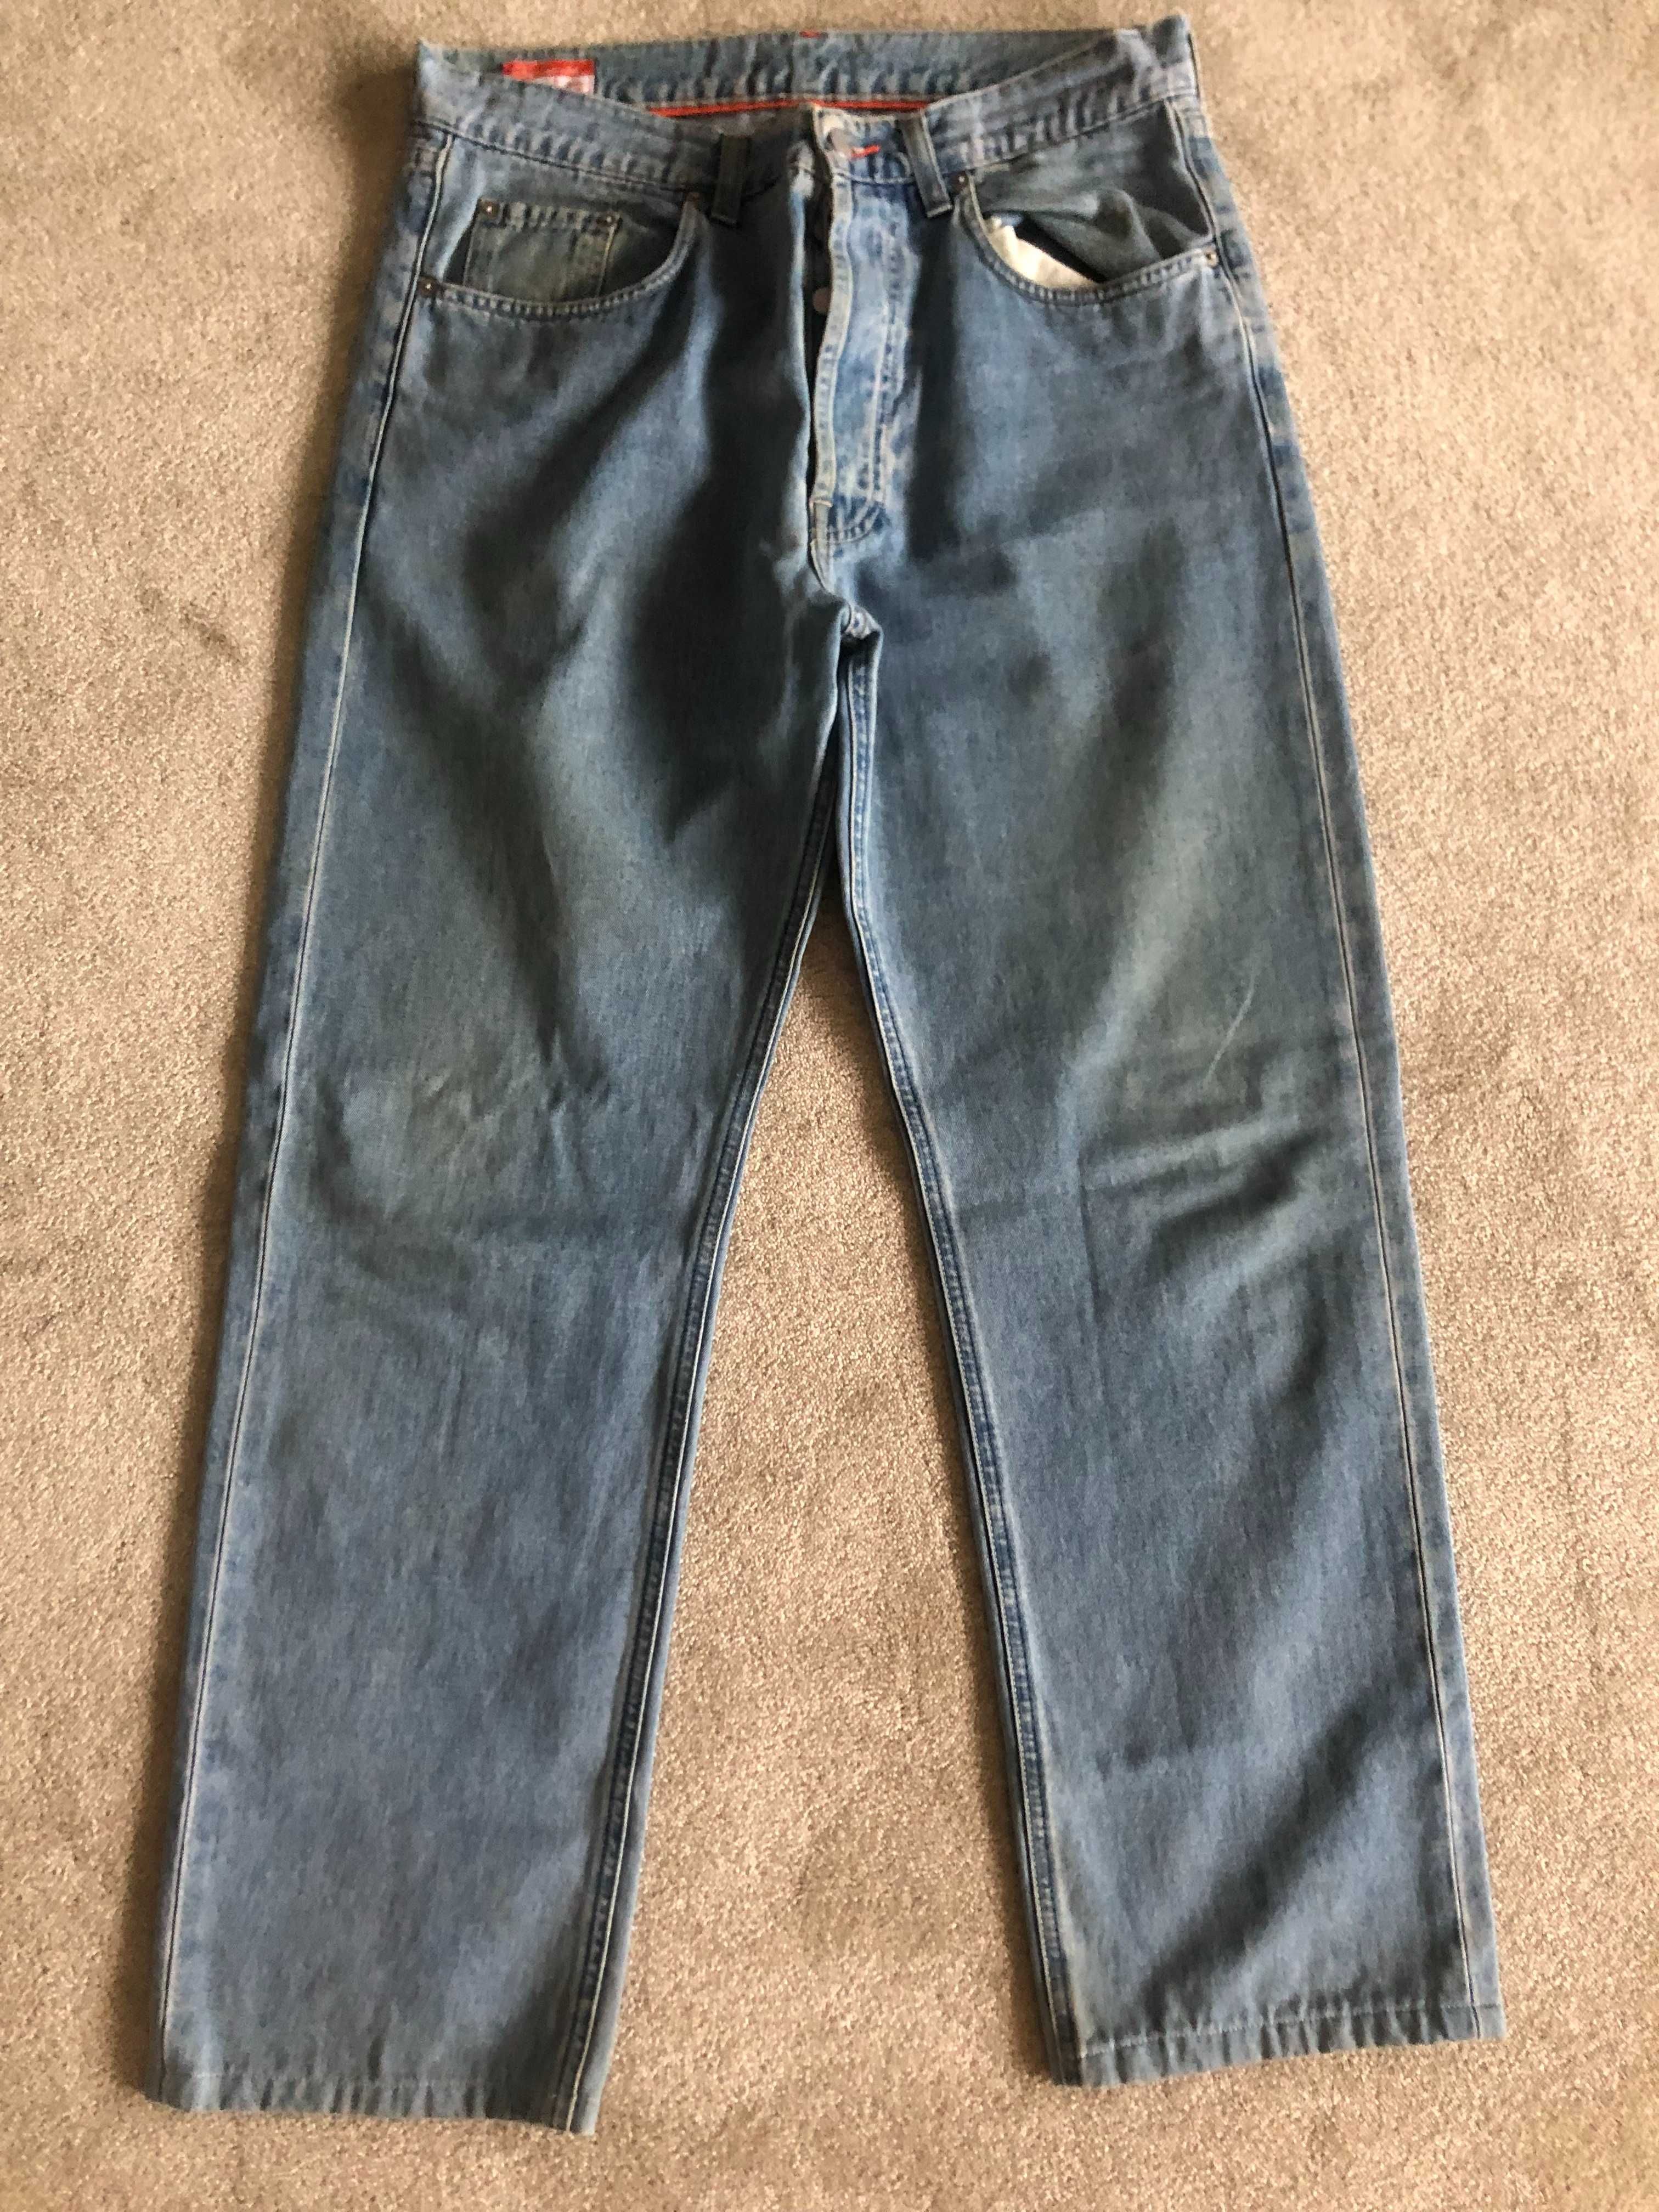 Jeans Façonnable - Modele F38 - Size 33